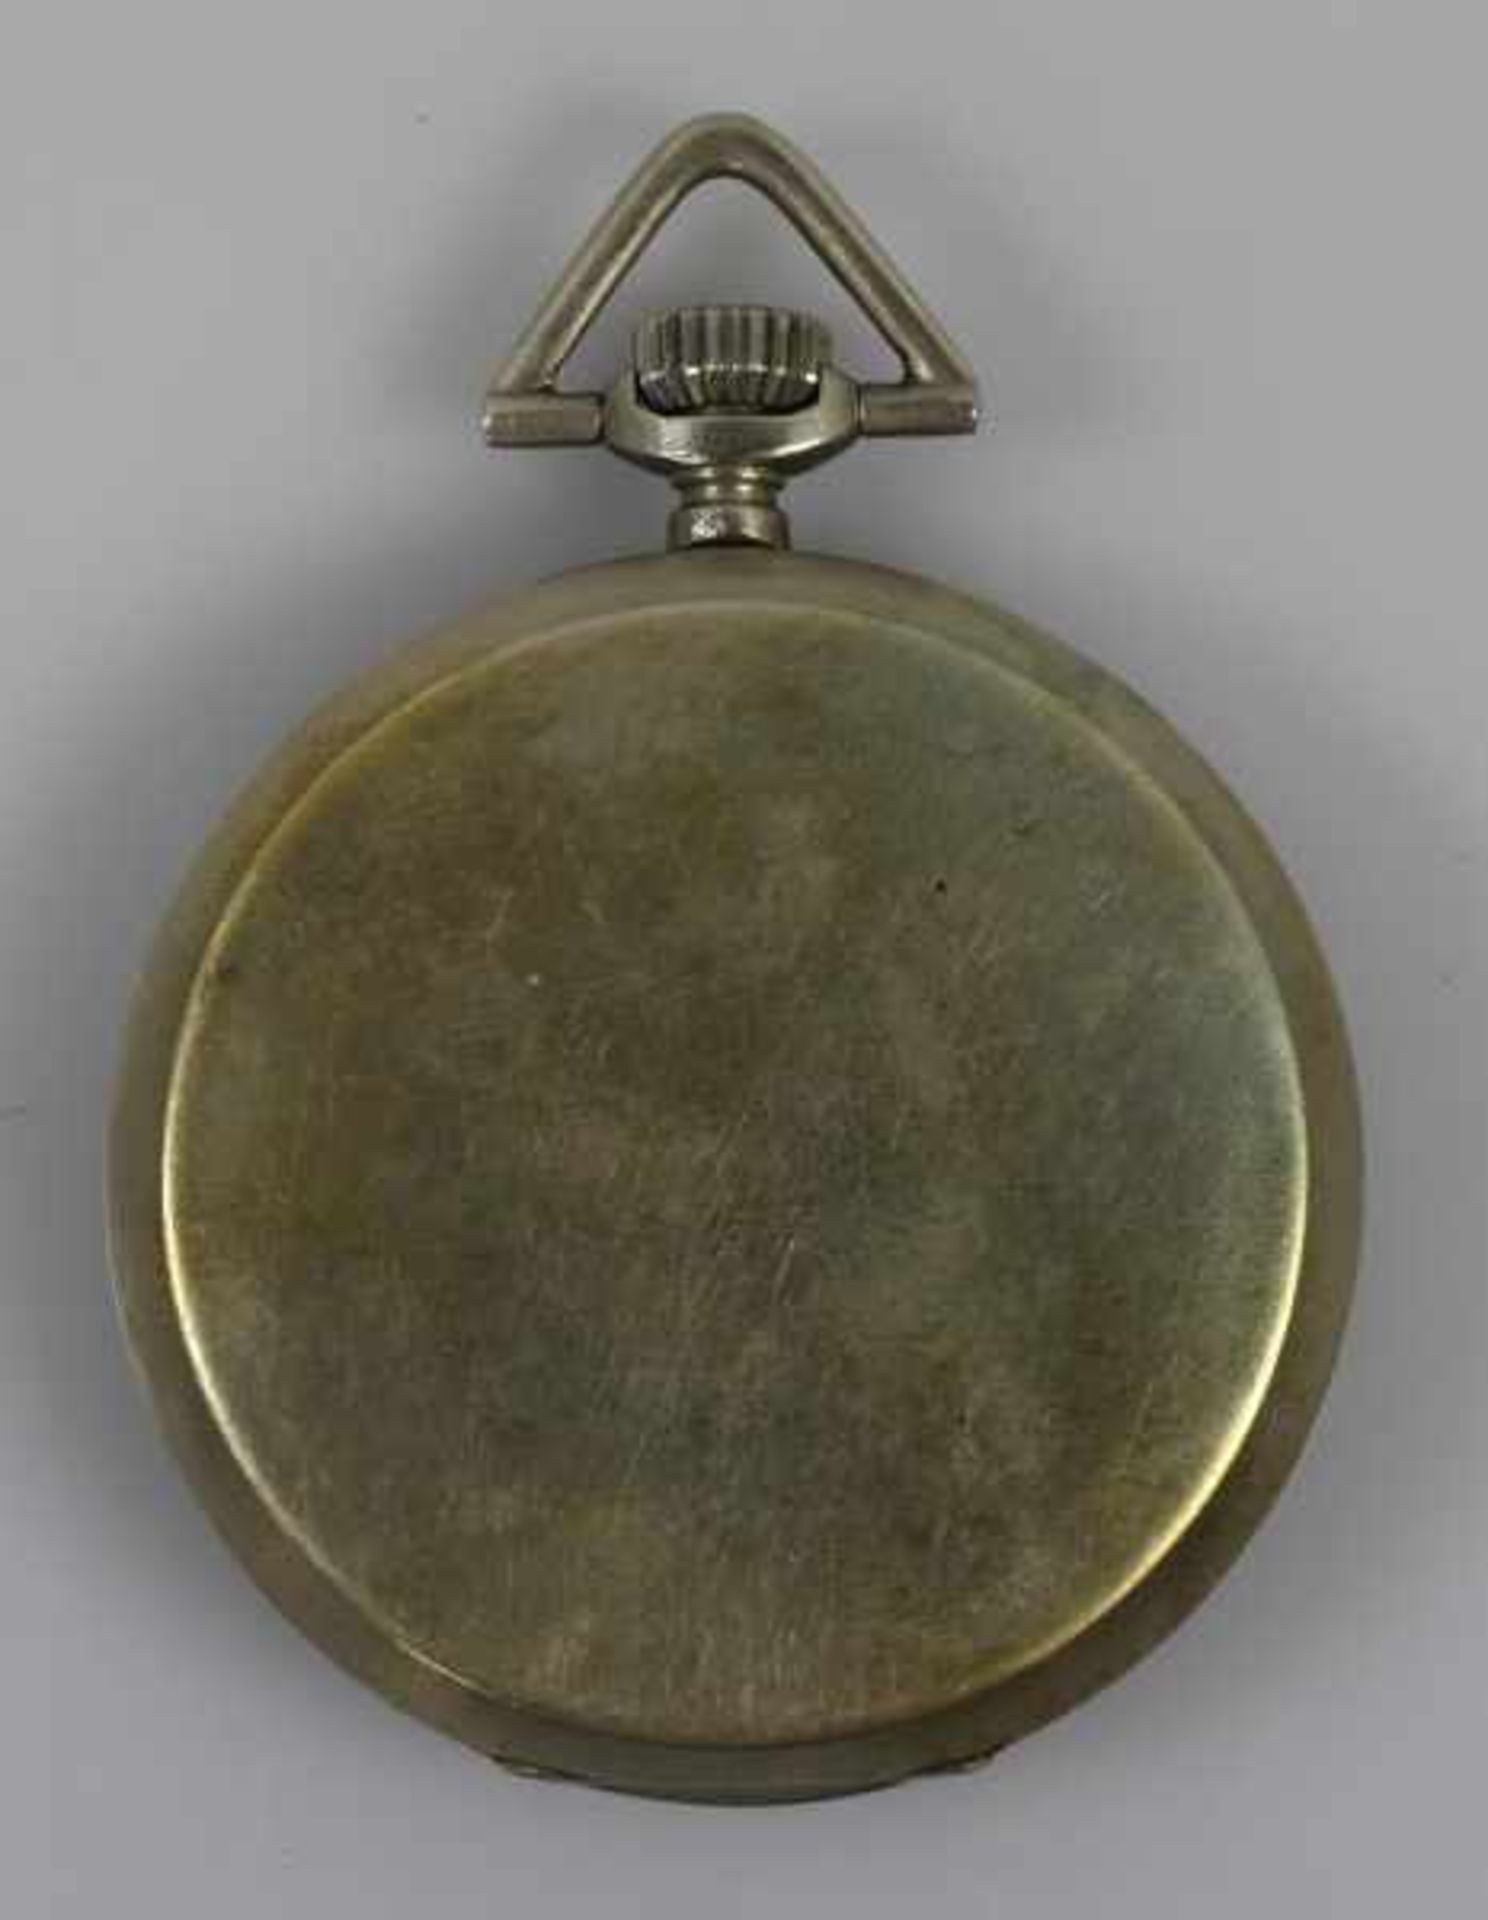 TASCHENUHR Ebel Chronometer, versilbertes Gehäuse mit silberfarbenem Zifferblatt, römischen Ziffern, - Bild 2 aus 3